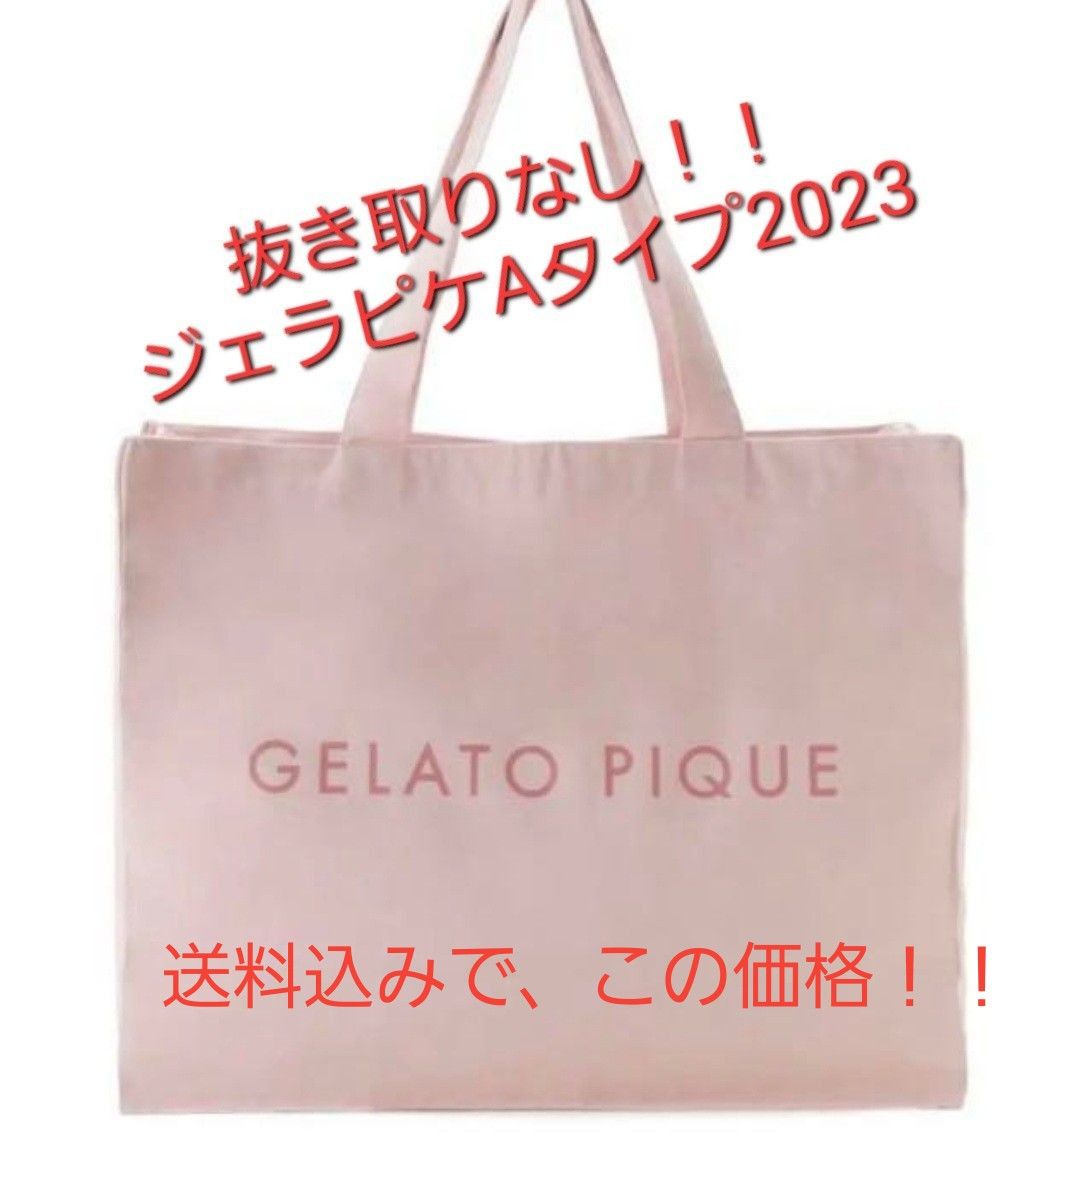 限定一個 )ジェラートピケ gelato pique HAPPY BAG 2023 <A>(PNK-F